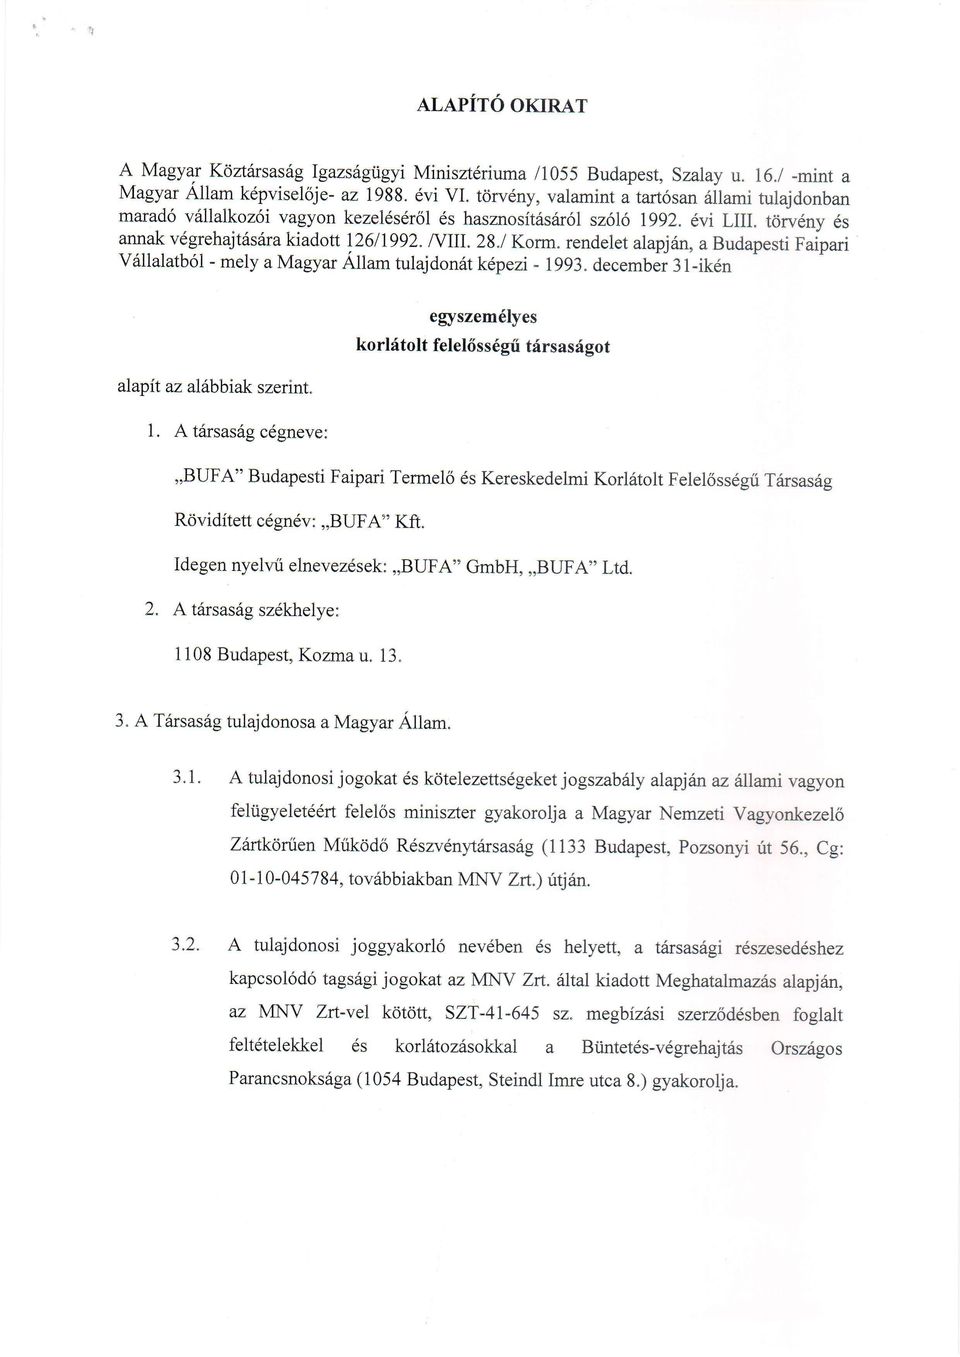 rendelet alapjin, a Budapesti Faipari vrillalatb6l - mely a Magyar Ailam tulajdon6t kepezi - lgg3. december 31-ik6n alapit az alabbiak szerint. 1.